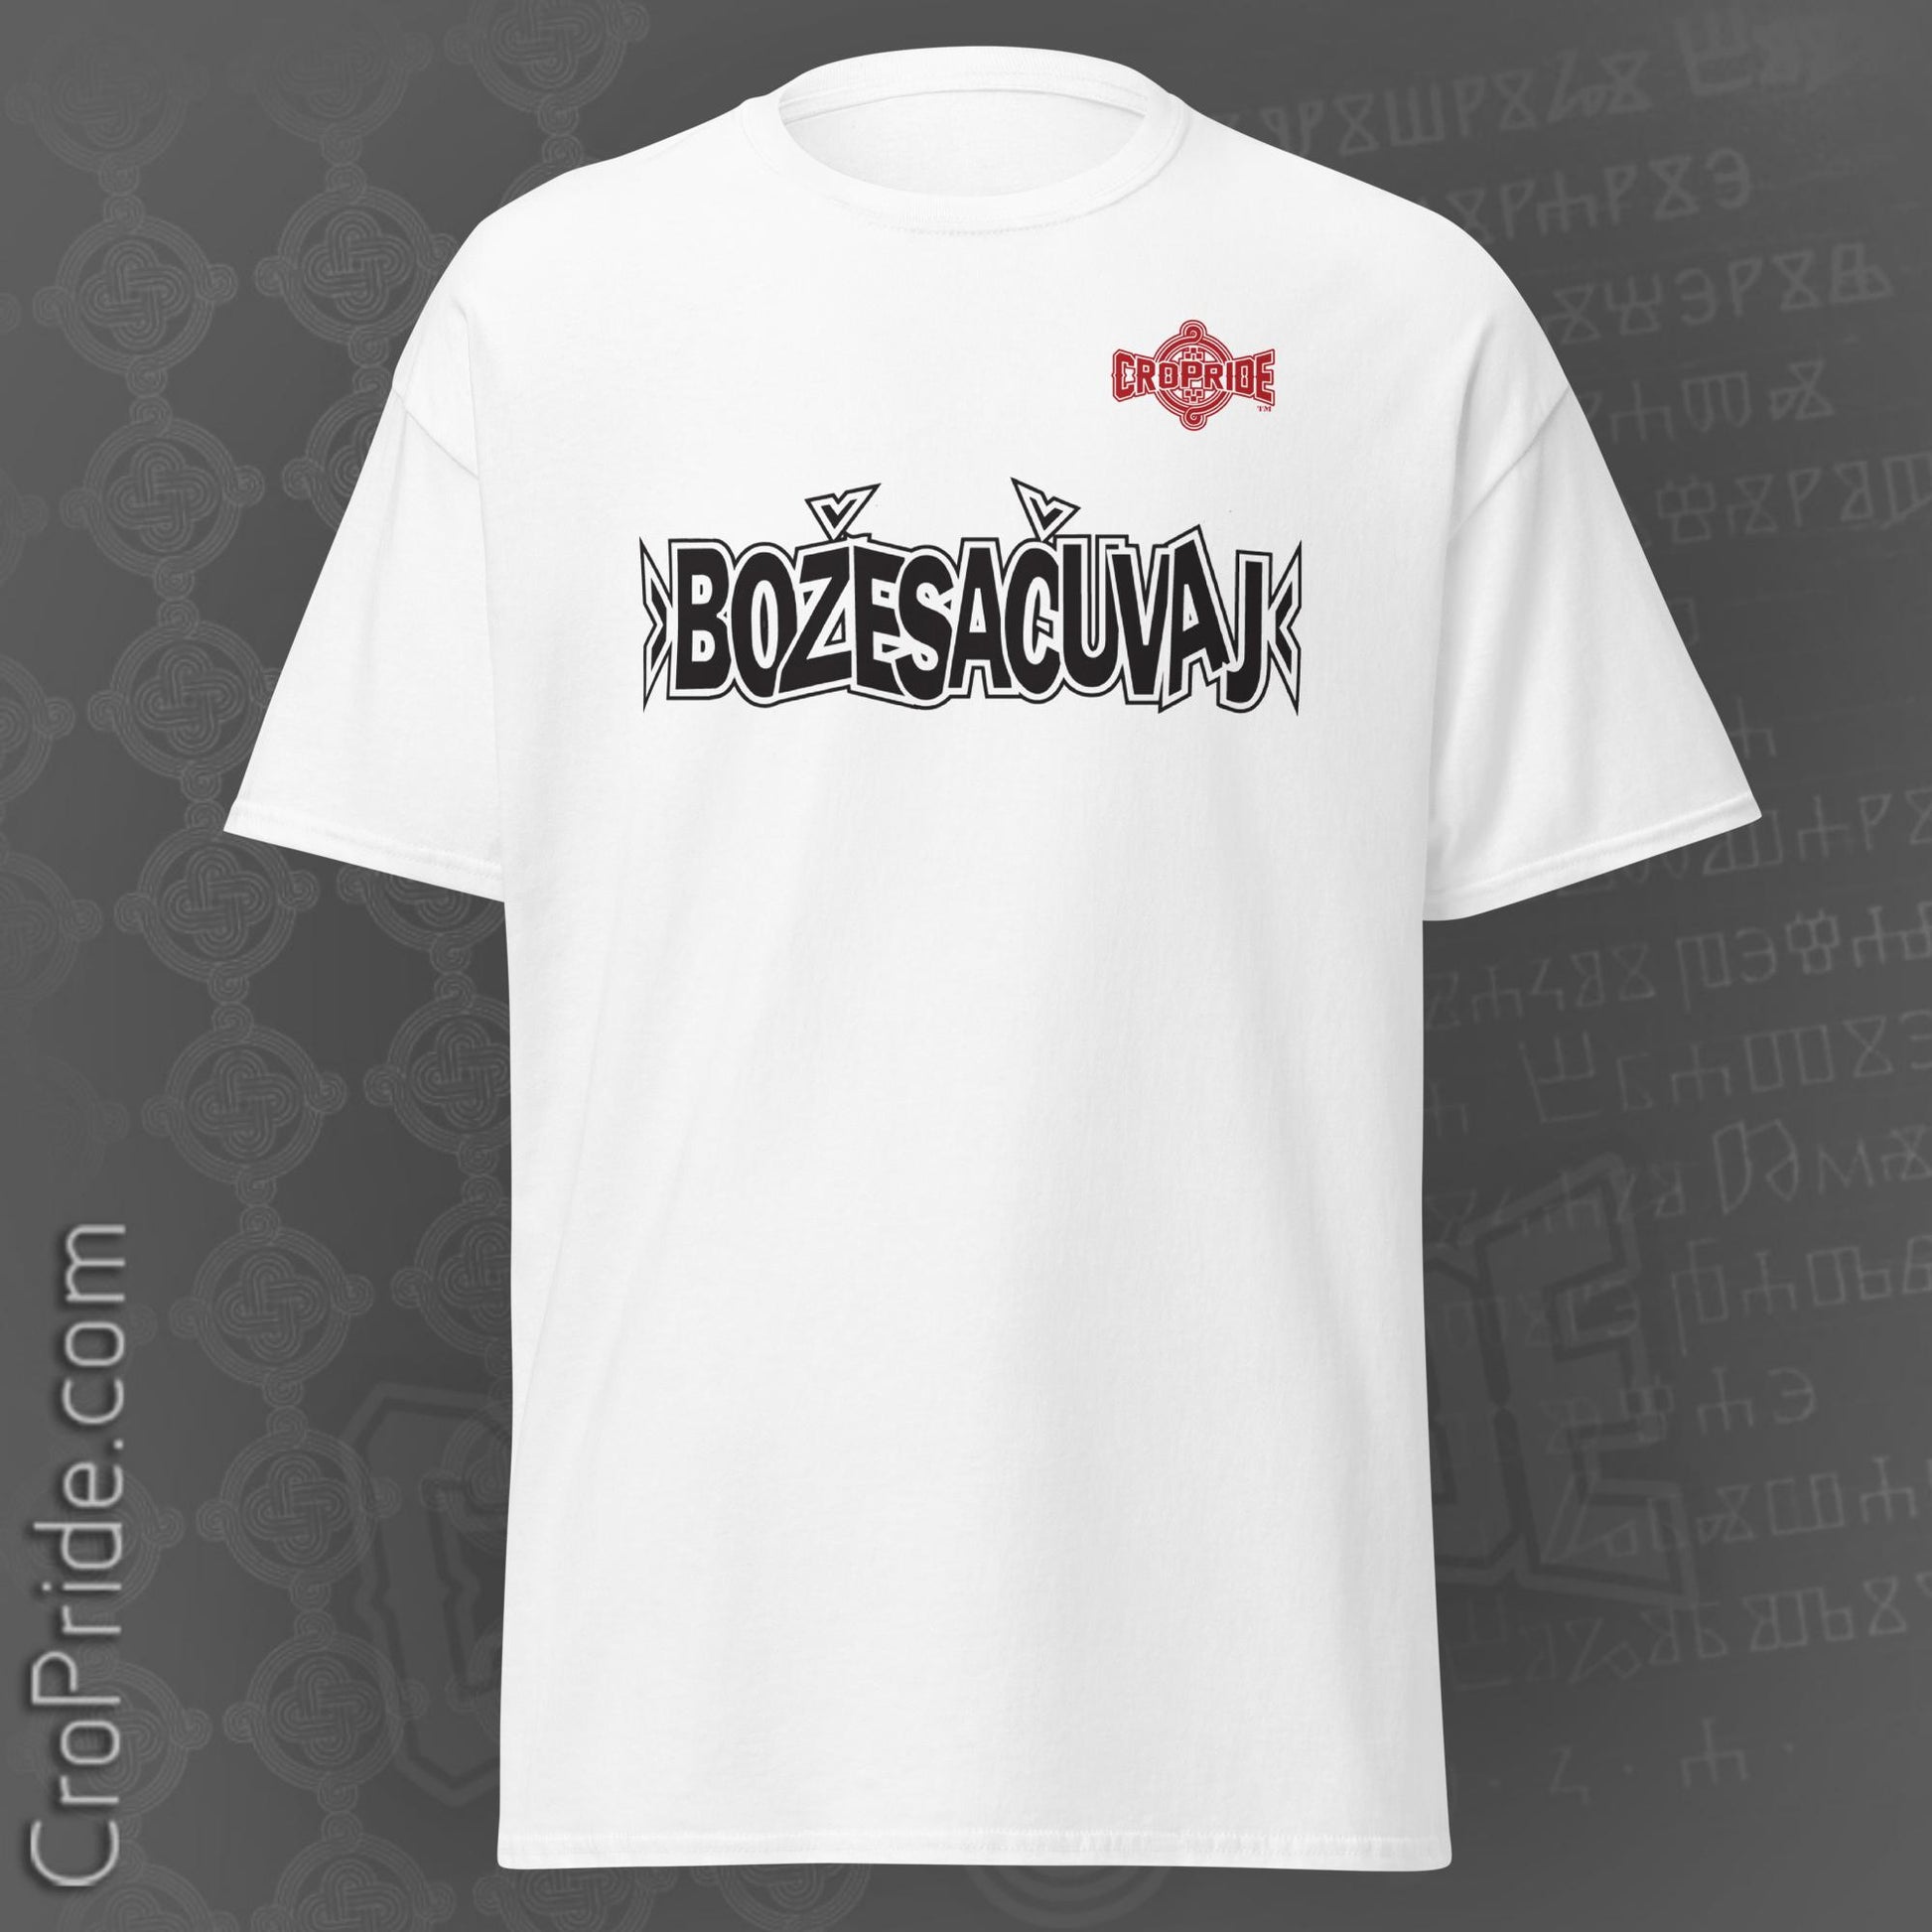 Croatian T-Shirt By CroPride Gear- "Boze Sacuvaj" Tee